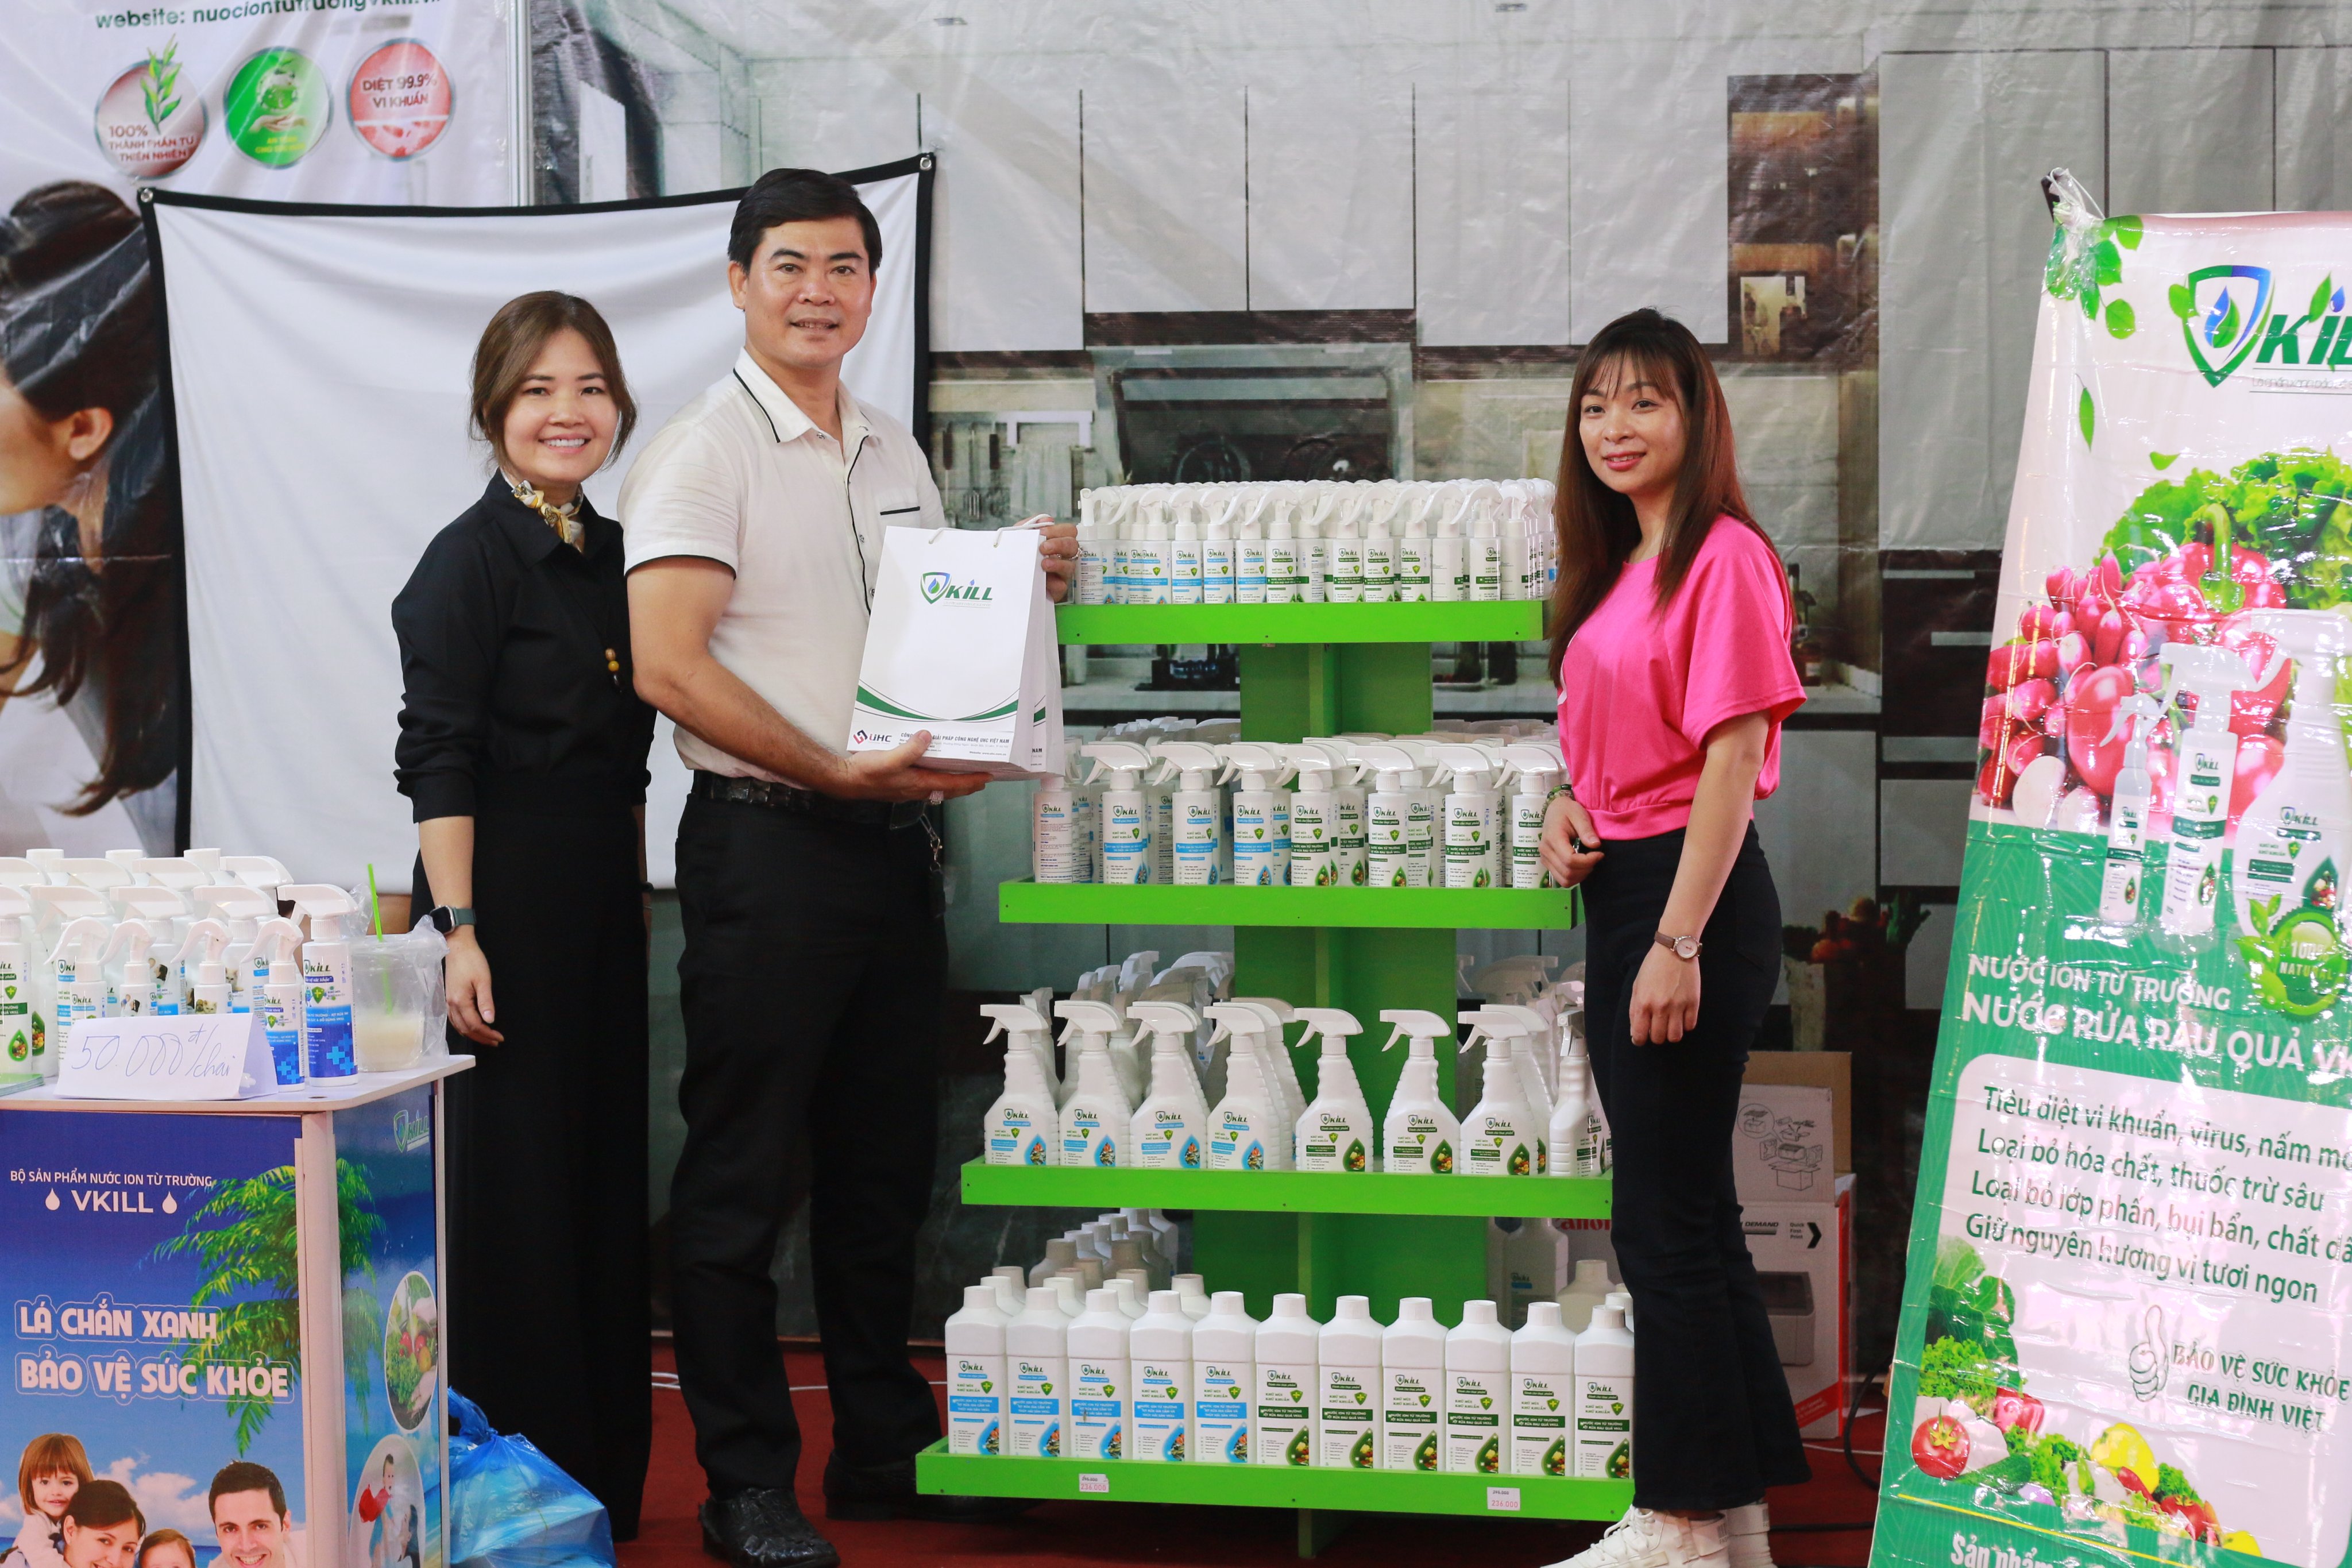 Nước rửa bình sữa Vkill 250ml sạch mảng bám nhanh diệt khuẩn và khử trùng hiệu quả với ion từ trường công nghệ Nhật Bản